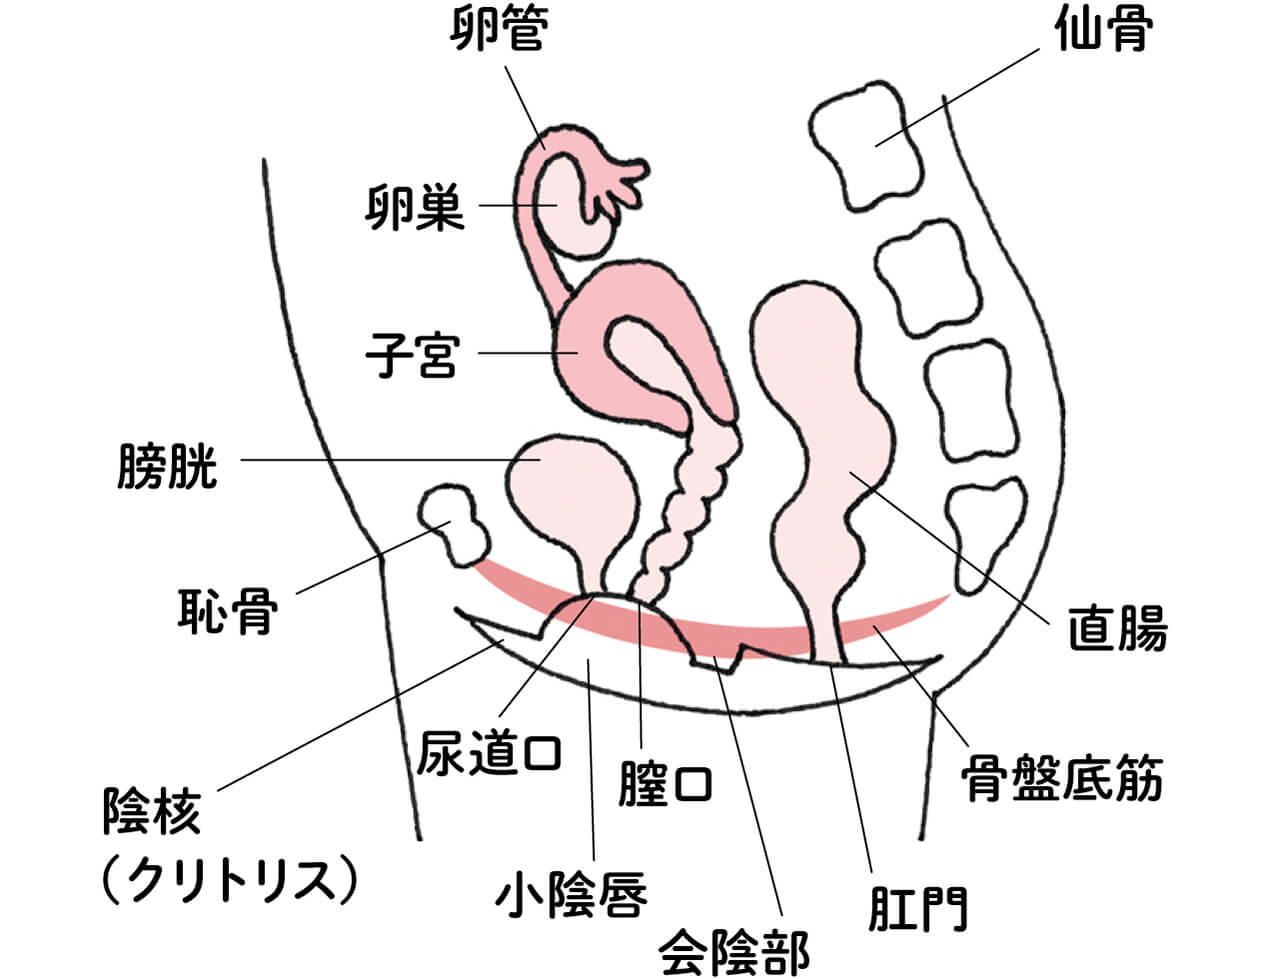 卵管 卵巣 子宮 膀胱 恥骨 陰核（クリトリス） 尿道口 小陰唇 膣口 会陰部 肛門 骨盤底筋 直腸 仙骨